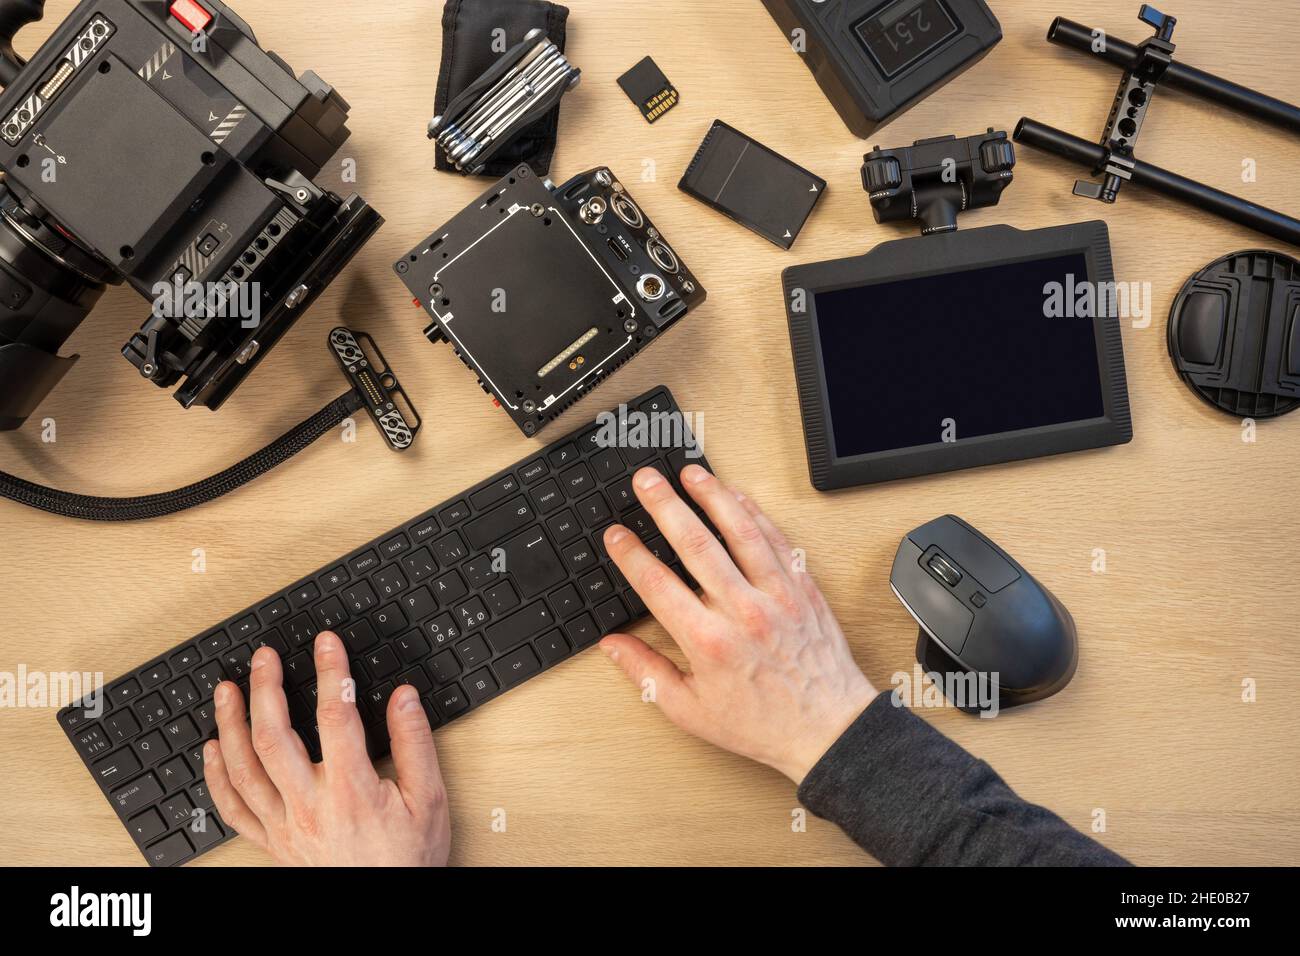 Photographe créatif utilisant un clavier d'ordinateur en filmant l'équipement à la table Banque D'Images